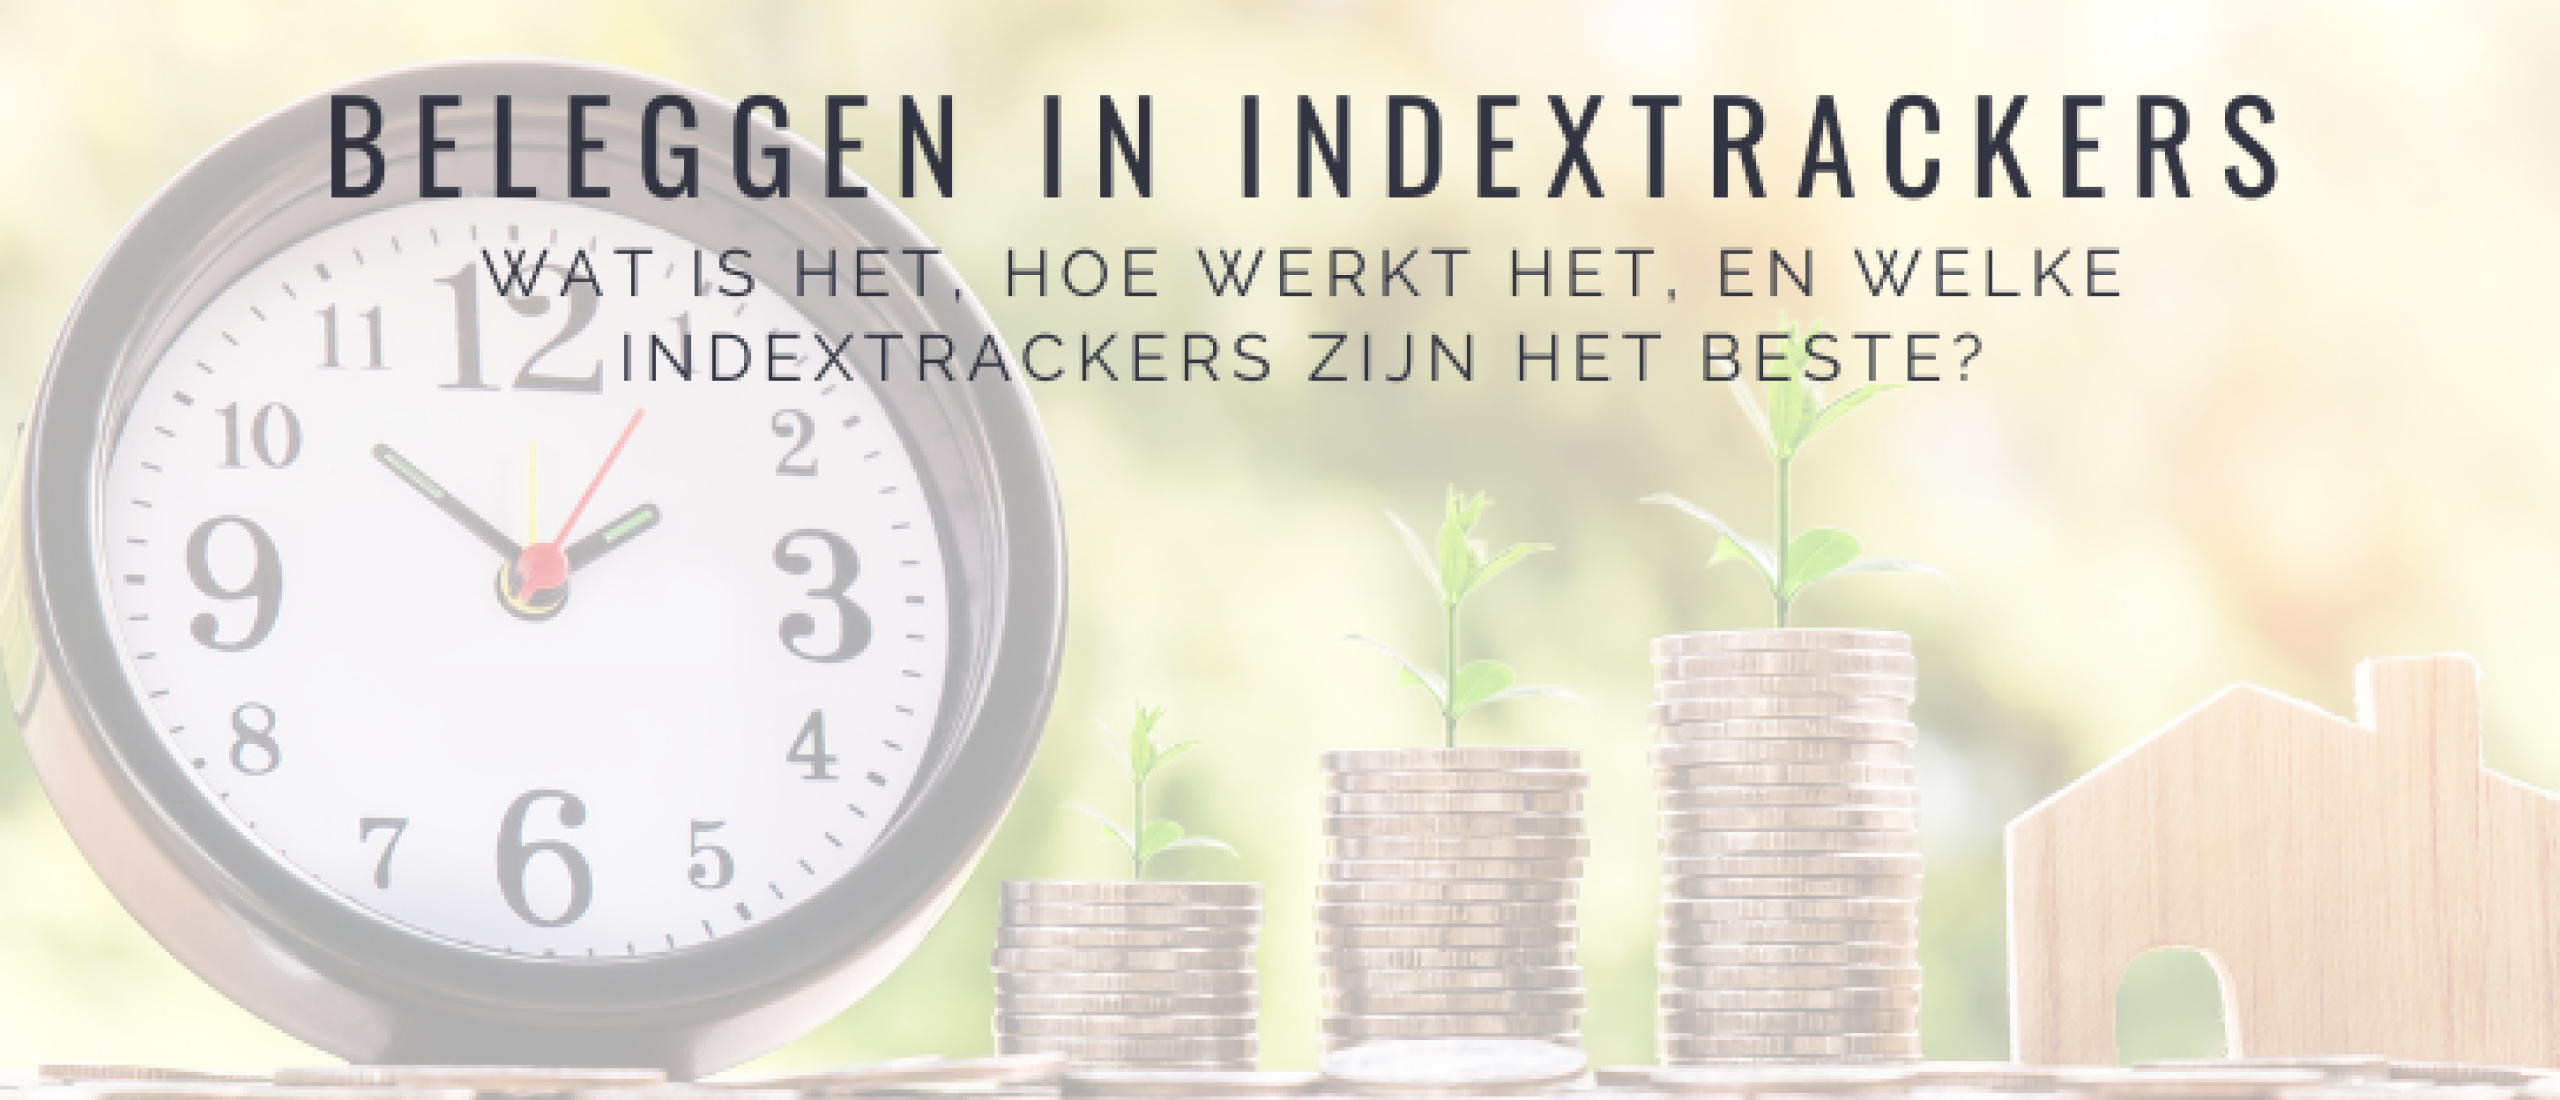 indextrackers-beleggen-uitleg